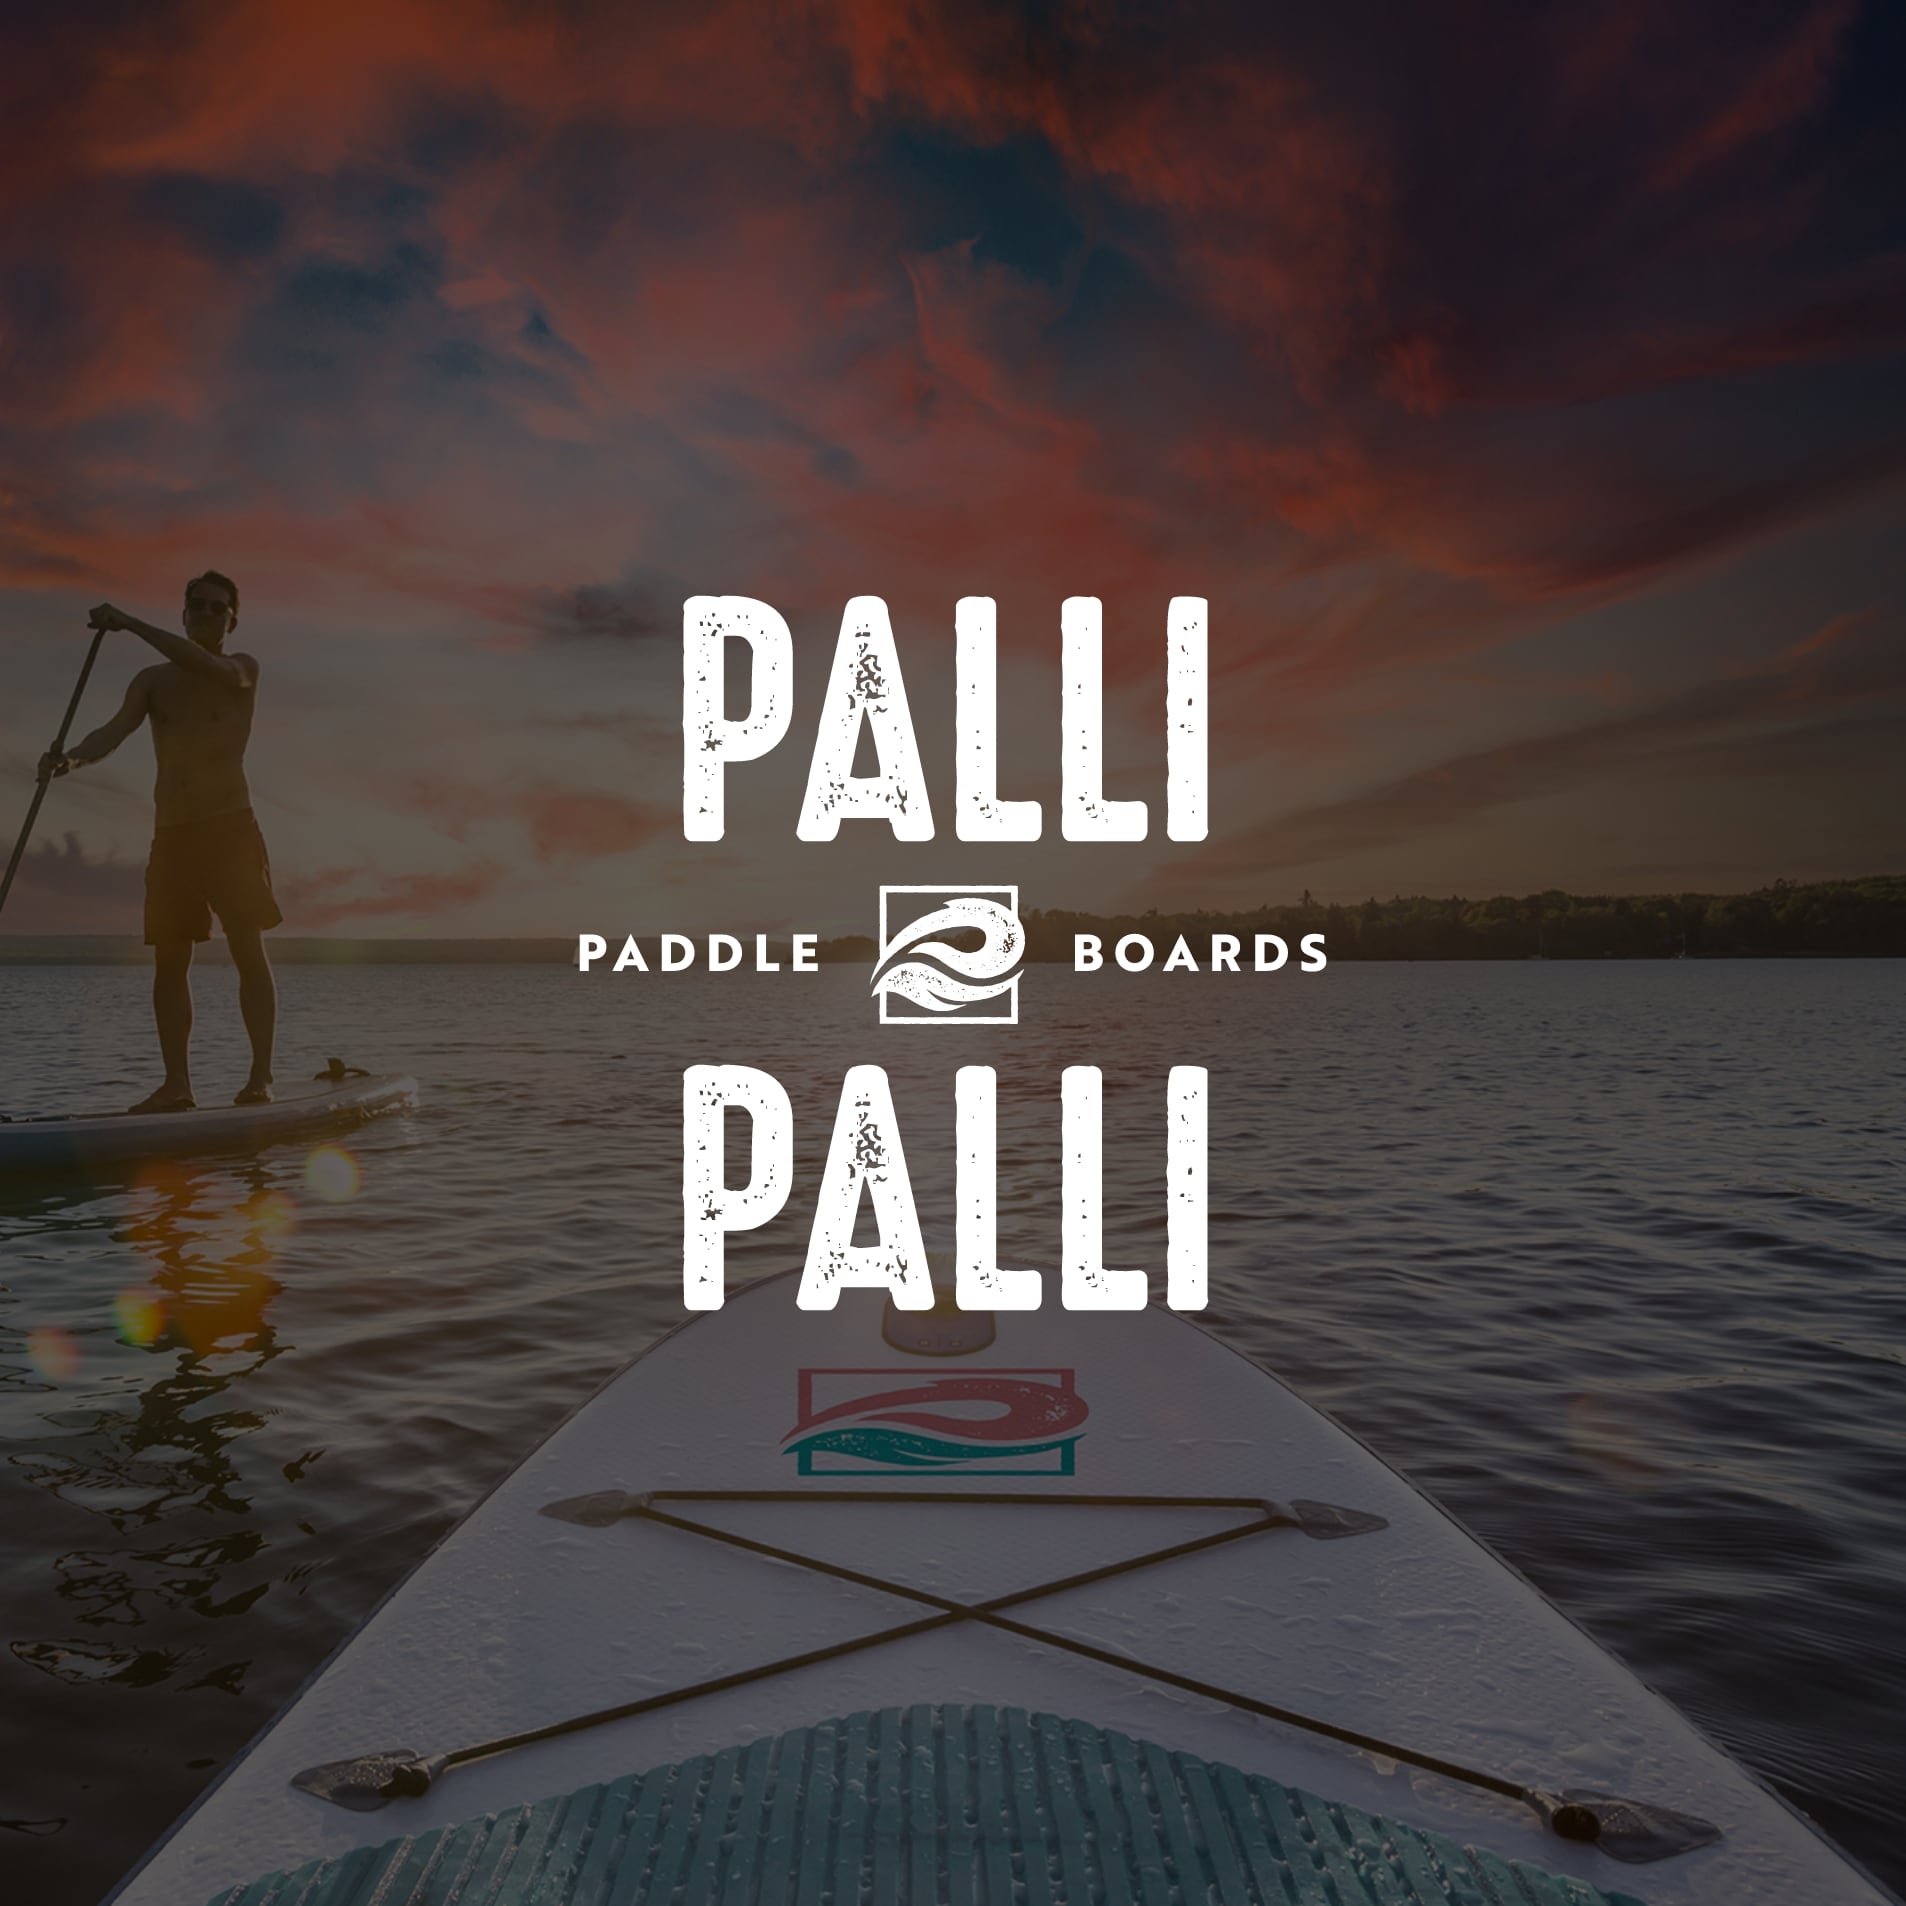 PalliPalli Logo - About Us